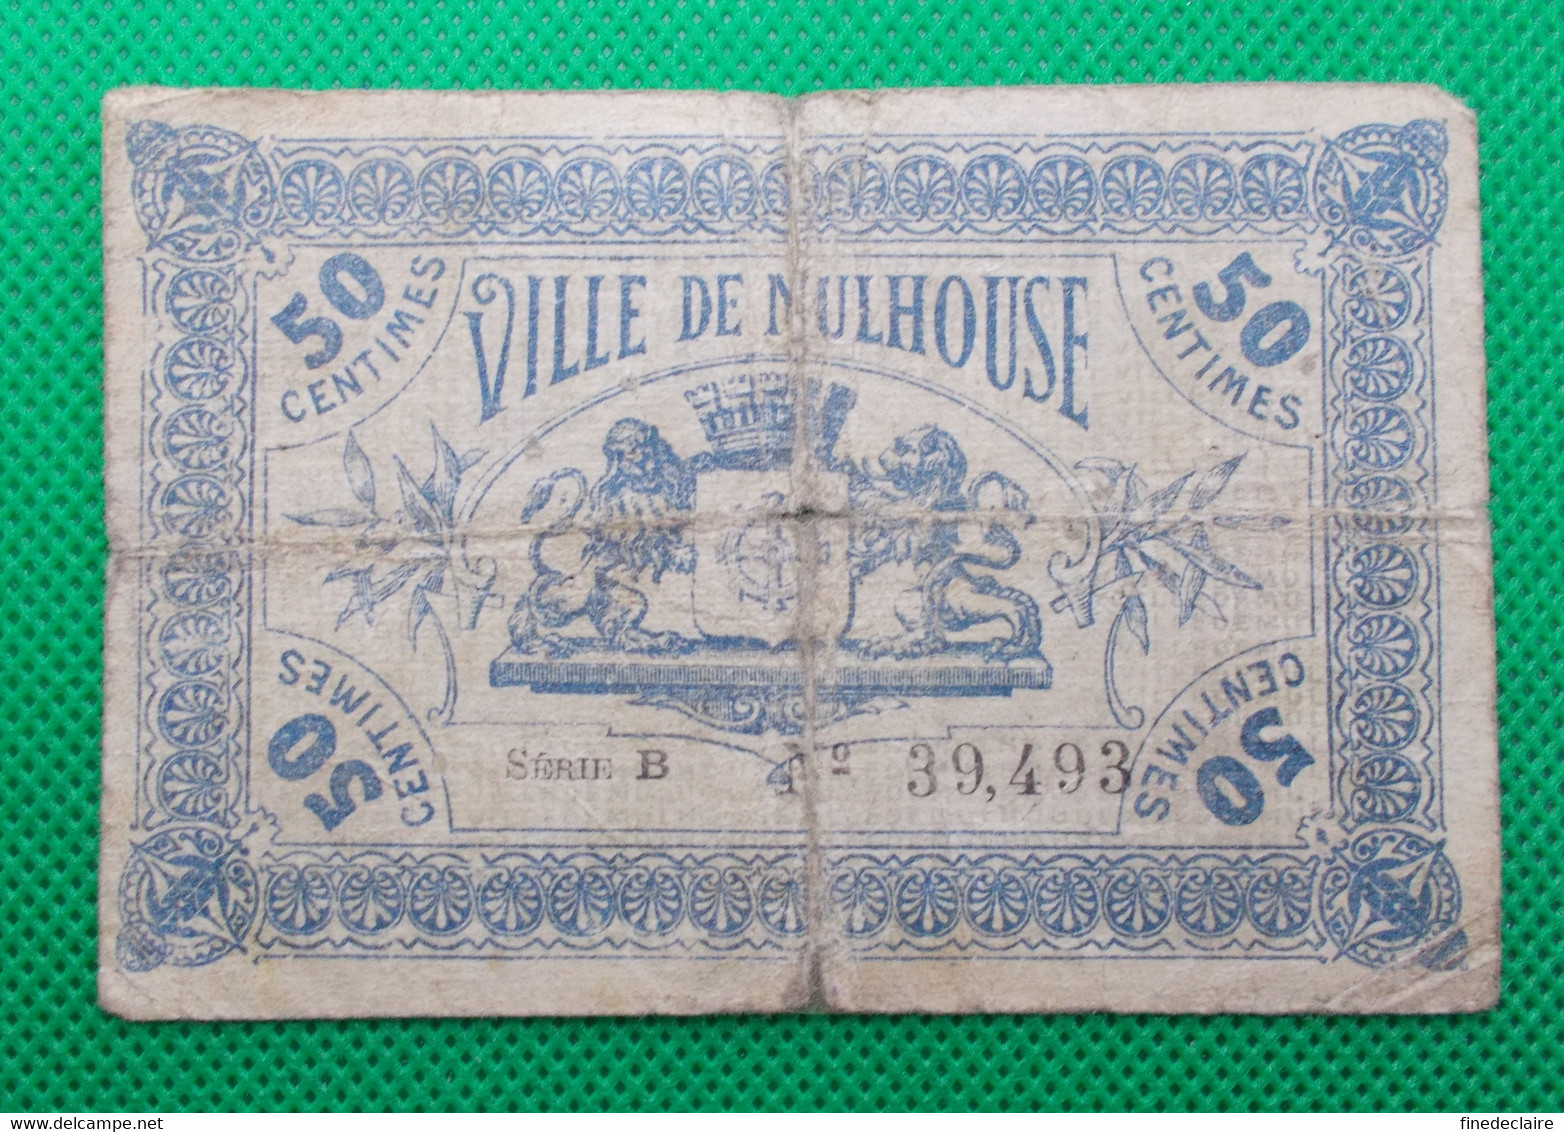 Billet Chambre De Commerce De Mulhouse - 50 Centimes - Série: B - Sans Filigrane - 18 Décembre 1918 - Chambre De Commerce